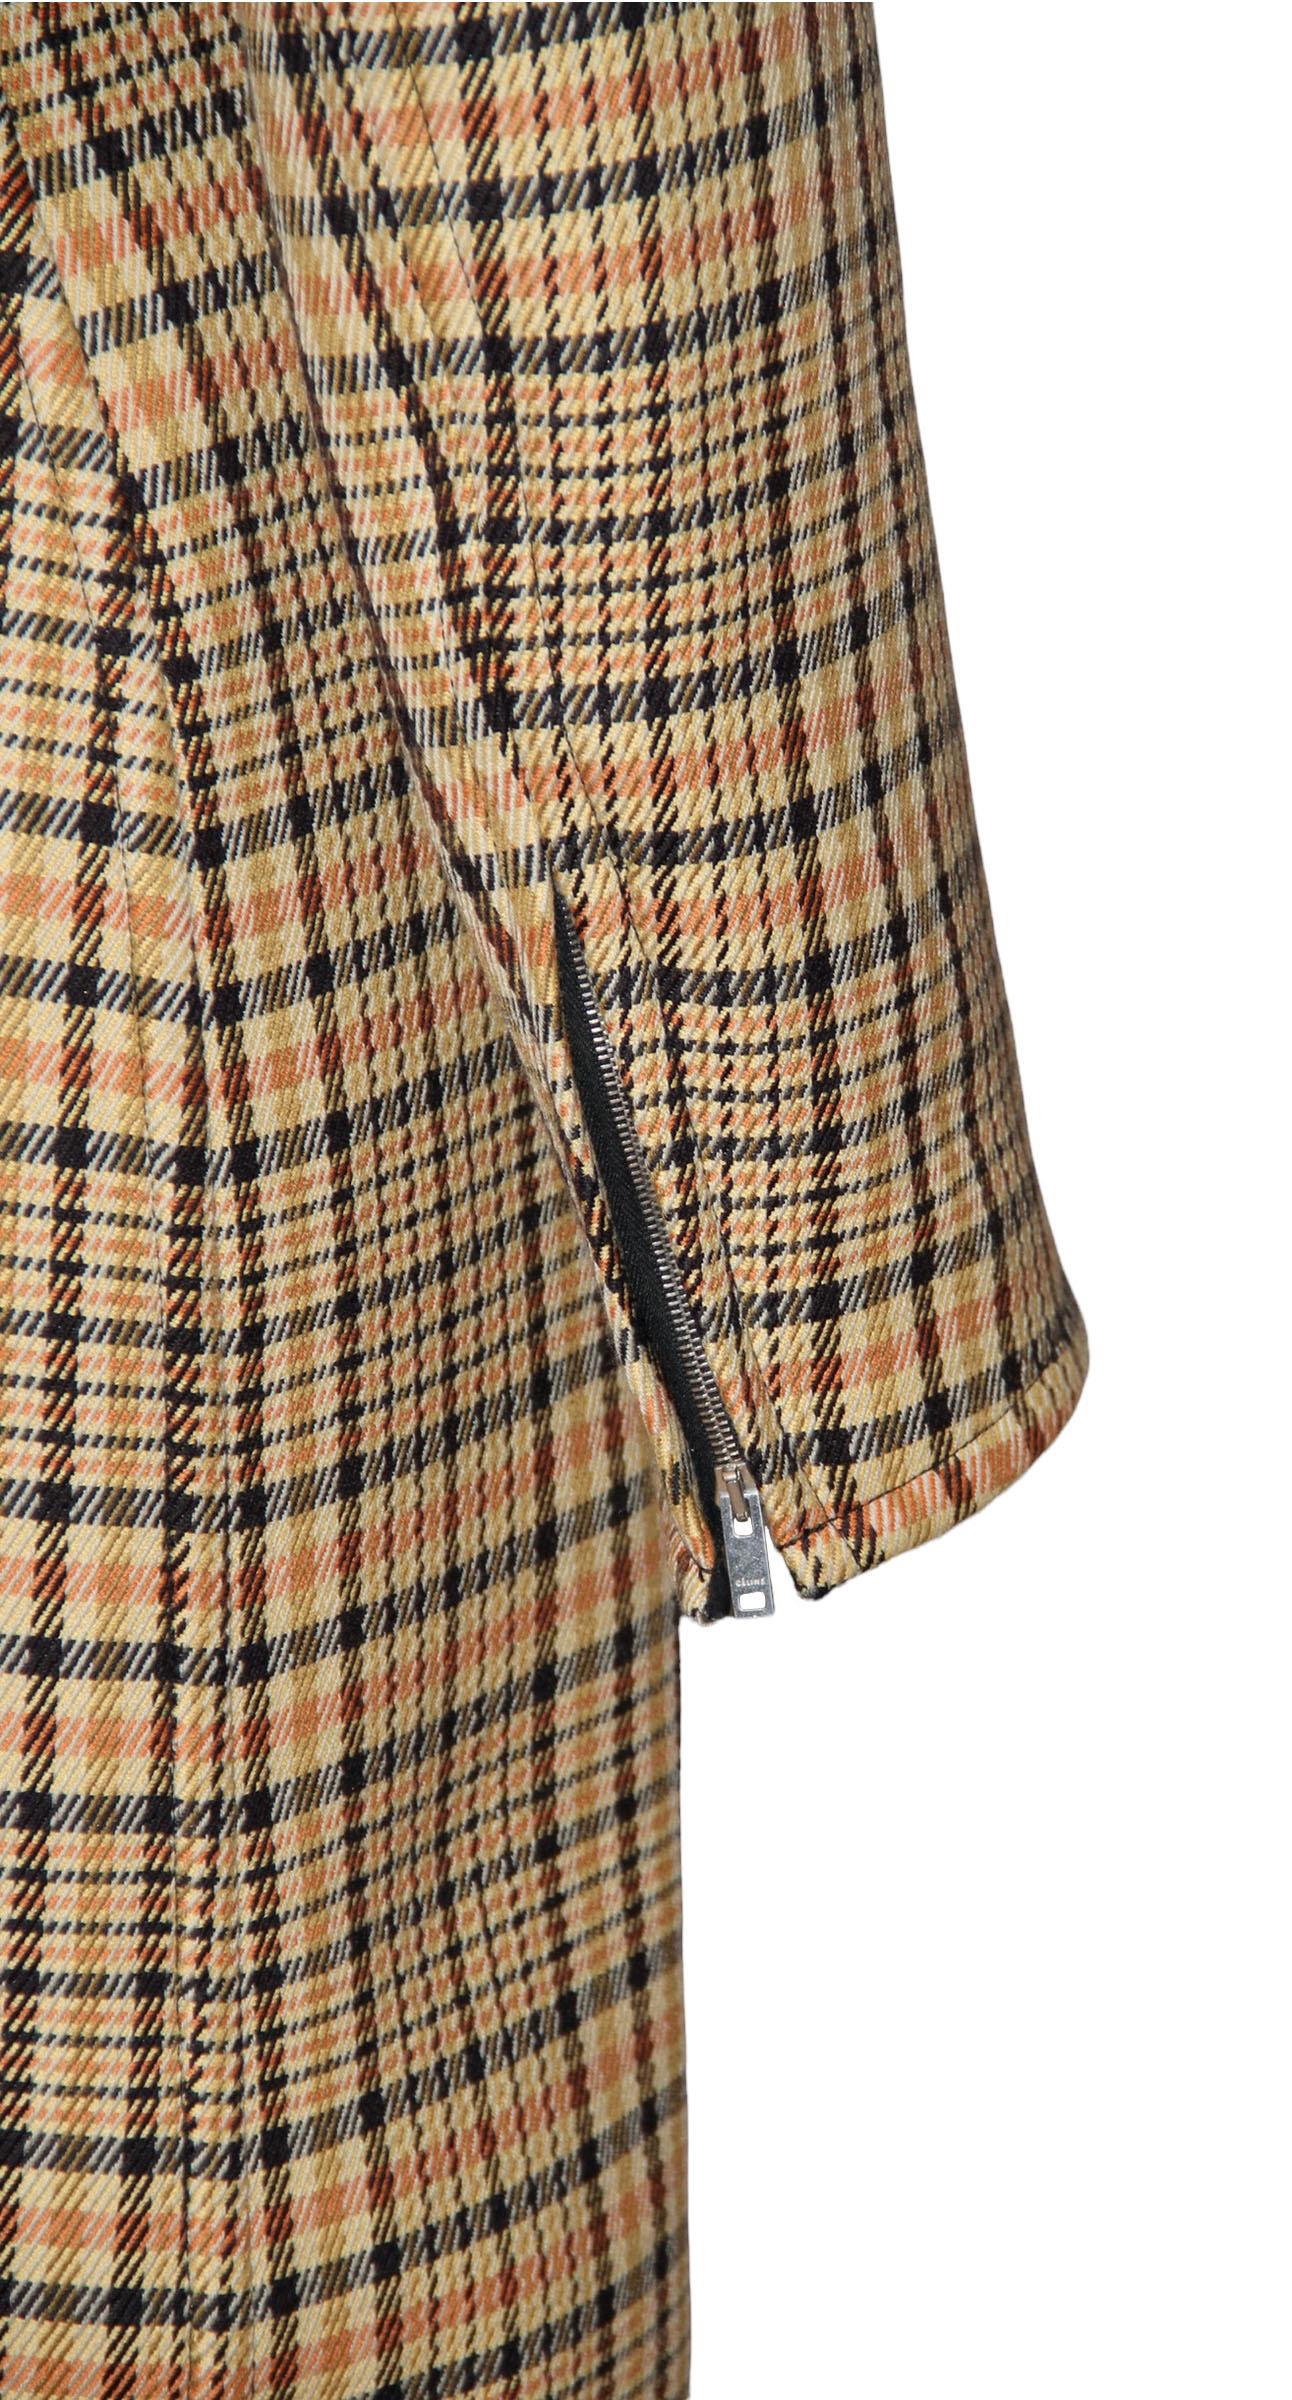 Women's or Men's Céline by Phoebe Philo SS 2016 Tartan Tweed Coat